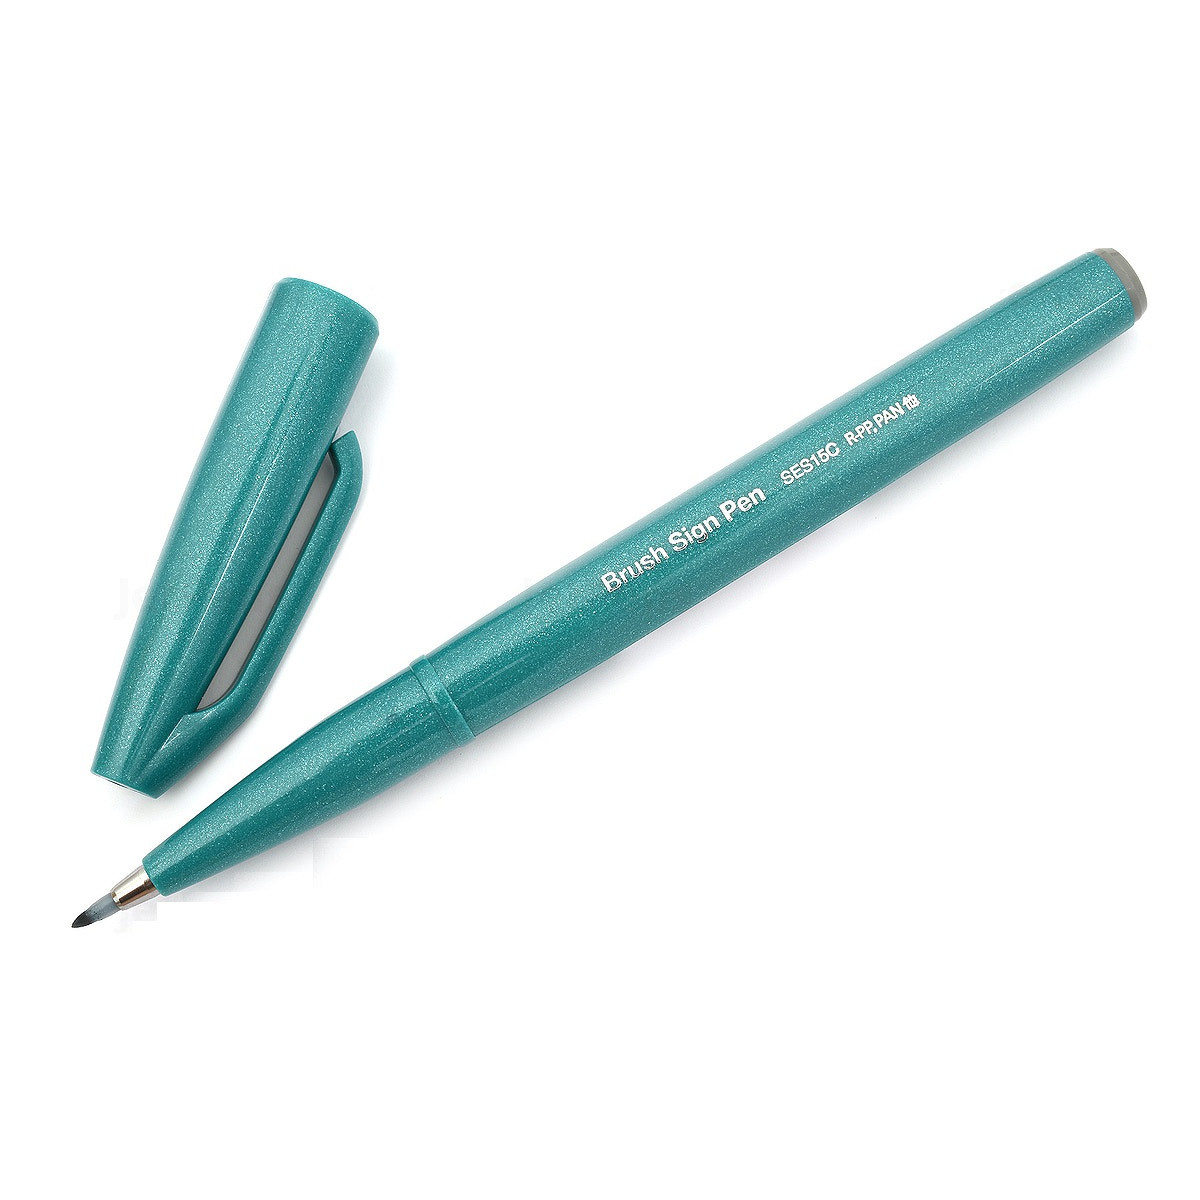 Bút lông viết chữ calligraphy Pentel Fude Touch Brush Sign Pen - Màu xanh lam (Turquoise Green)